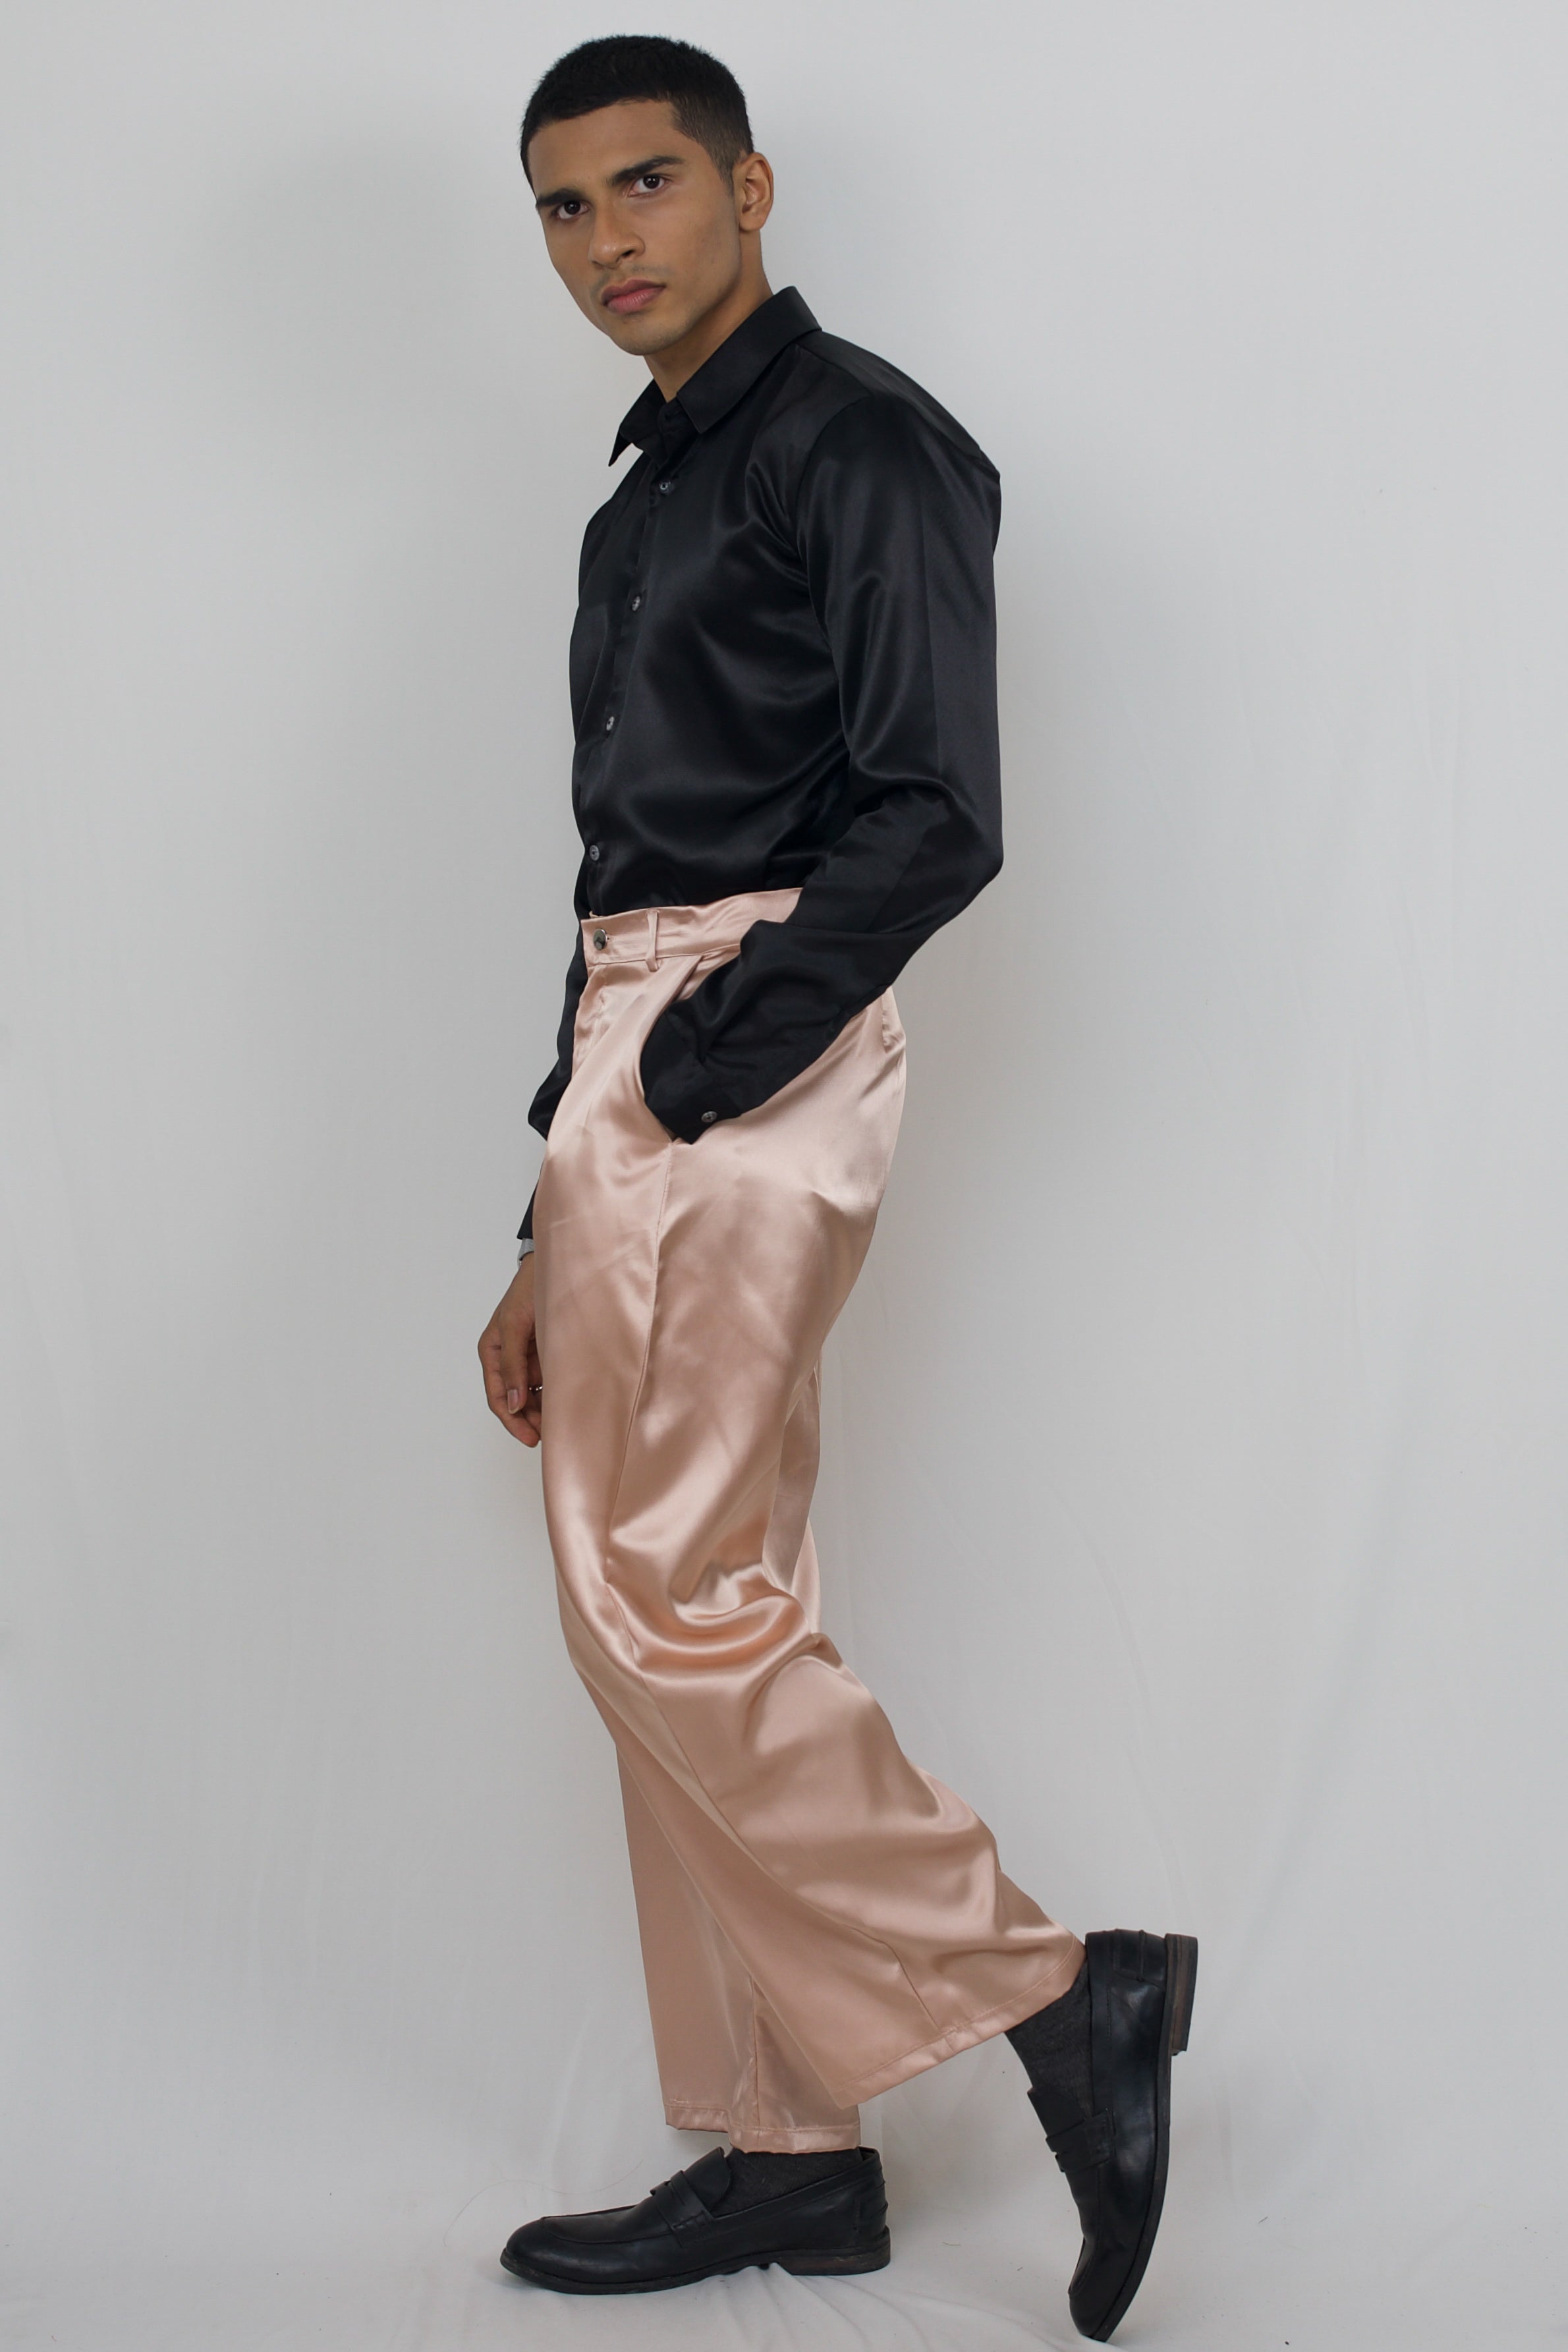 GenesinlifeShops Sweden - Fendi Black Pants - 'Jiro' satin trousers Nanushka